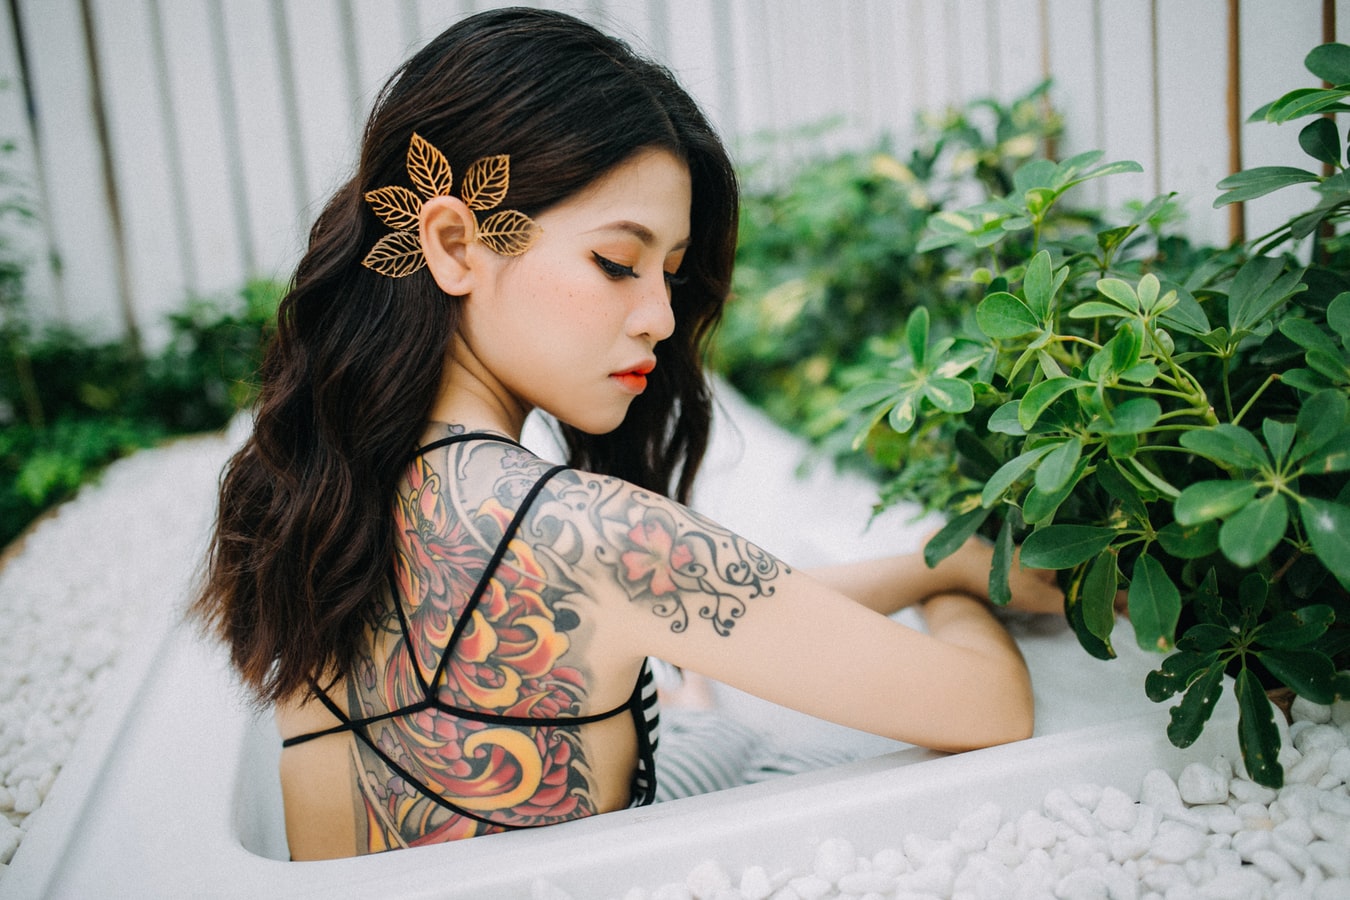 Τατουάζ και προκαταλήψεις: 4 στους 10 έχουν βιώσει άσχημη συμπεριφορά